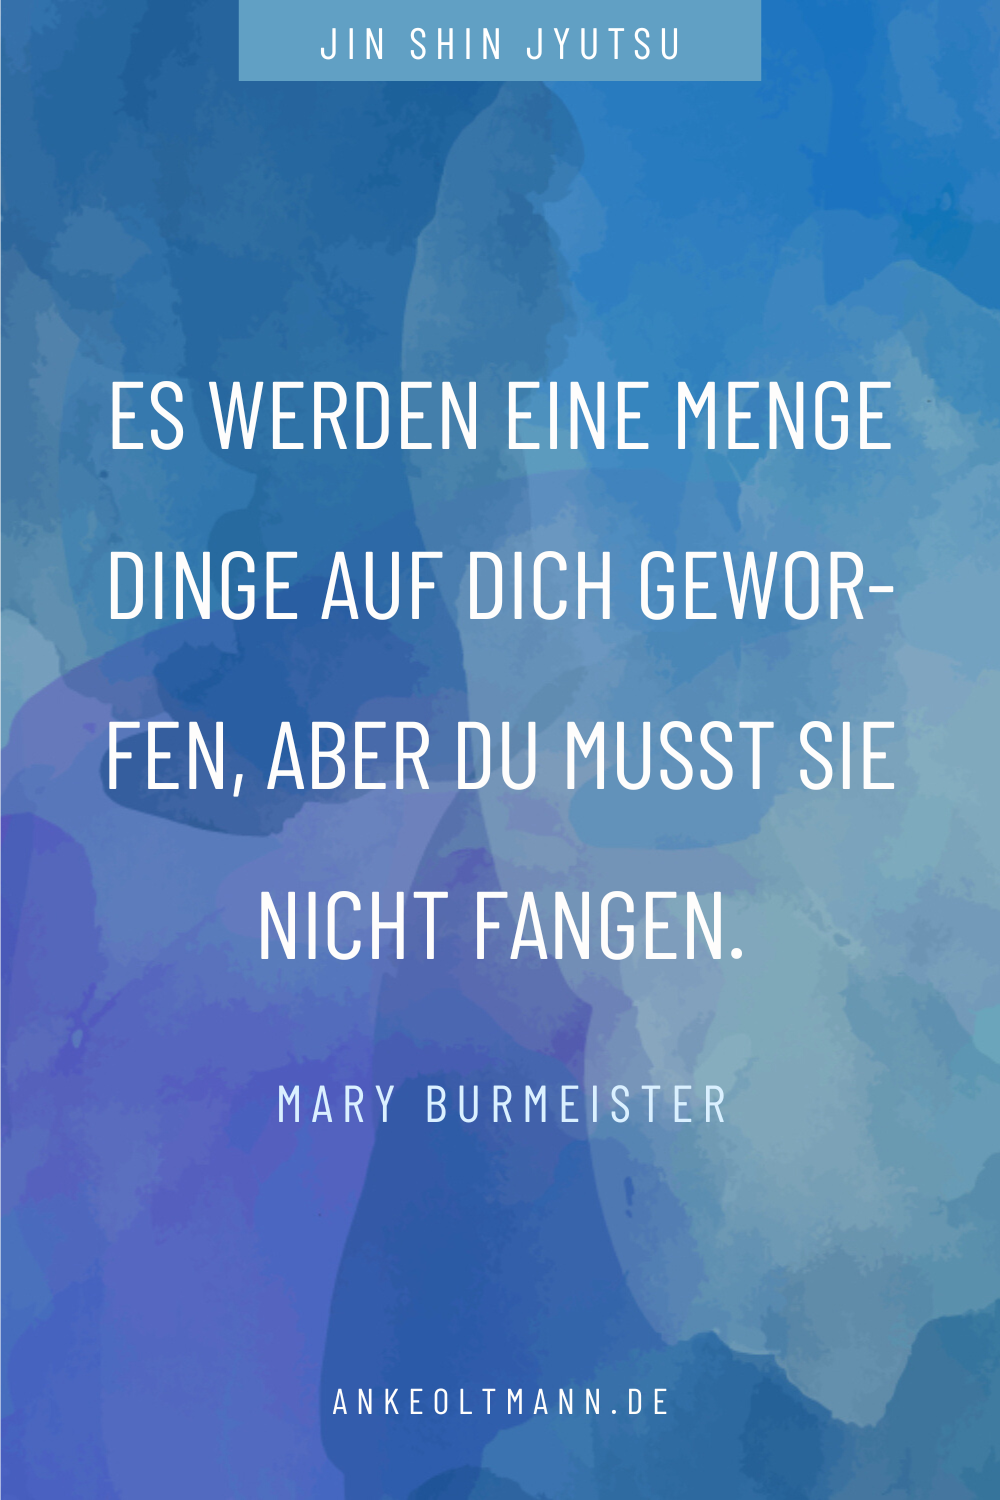 Zitate von Mary Burmeister